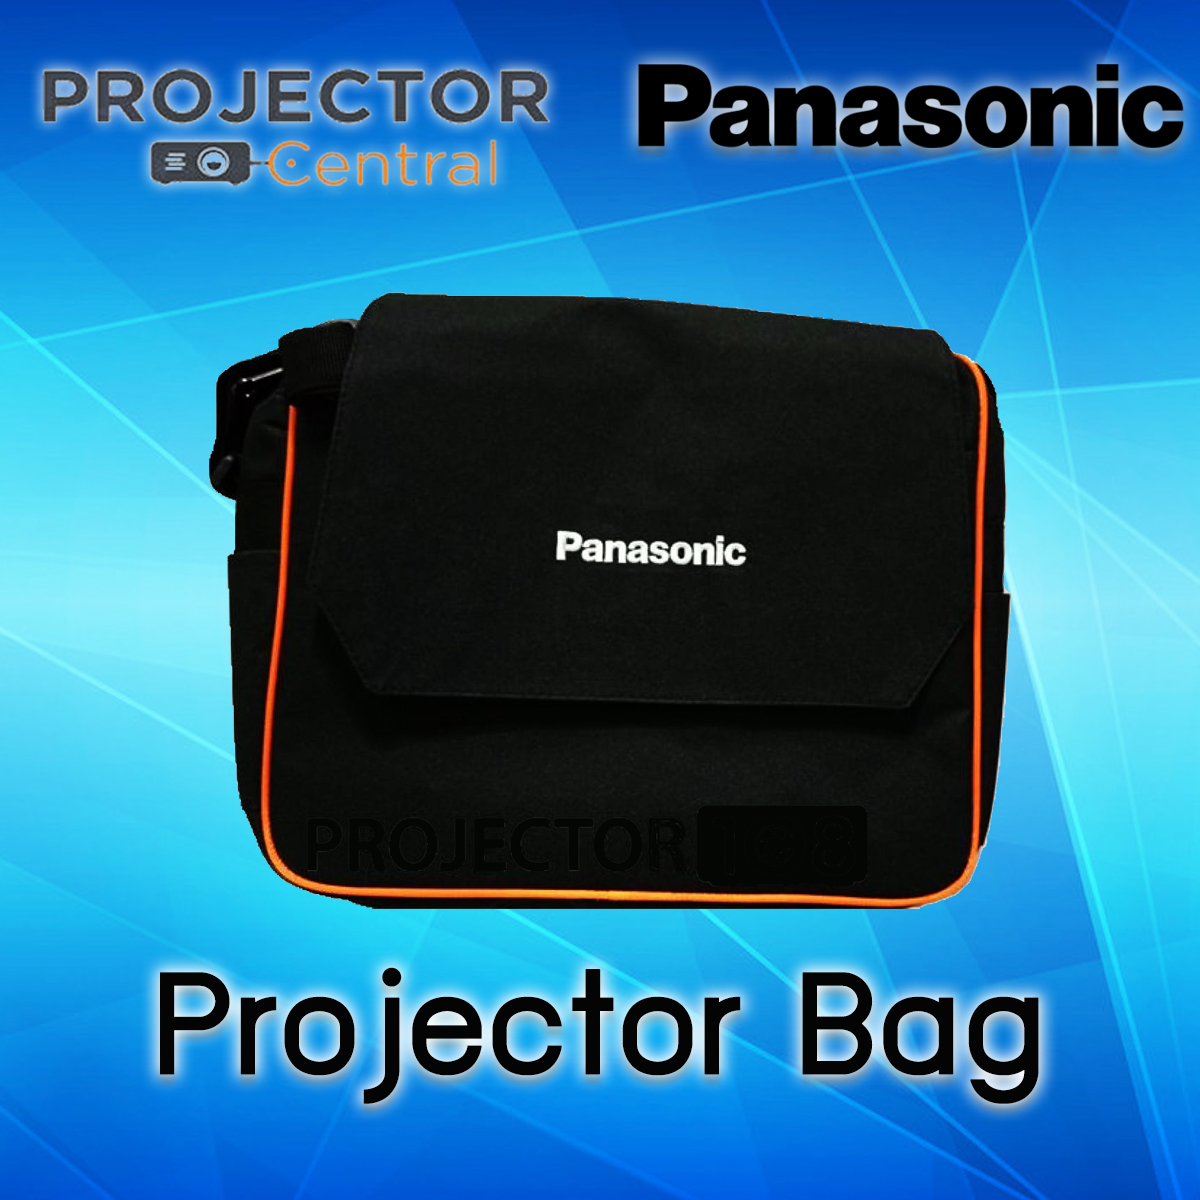 Projector Bag Panasonic กระเป๋าใส่โปรเจคเตอร์ (ส.33 ก.33 หนา 14 ซม.)